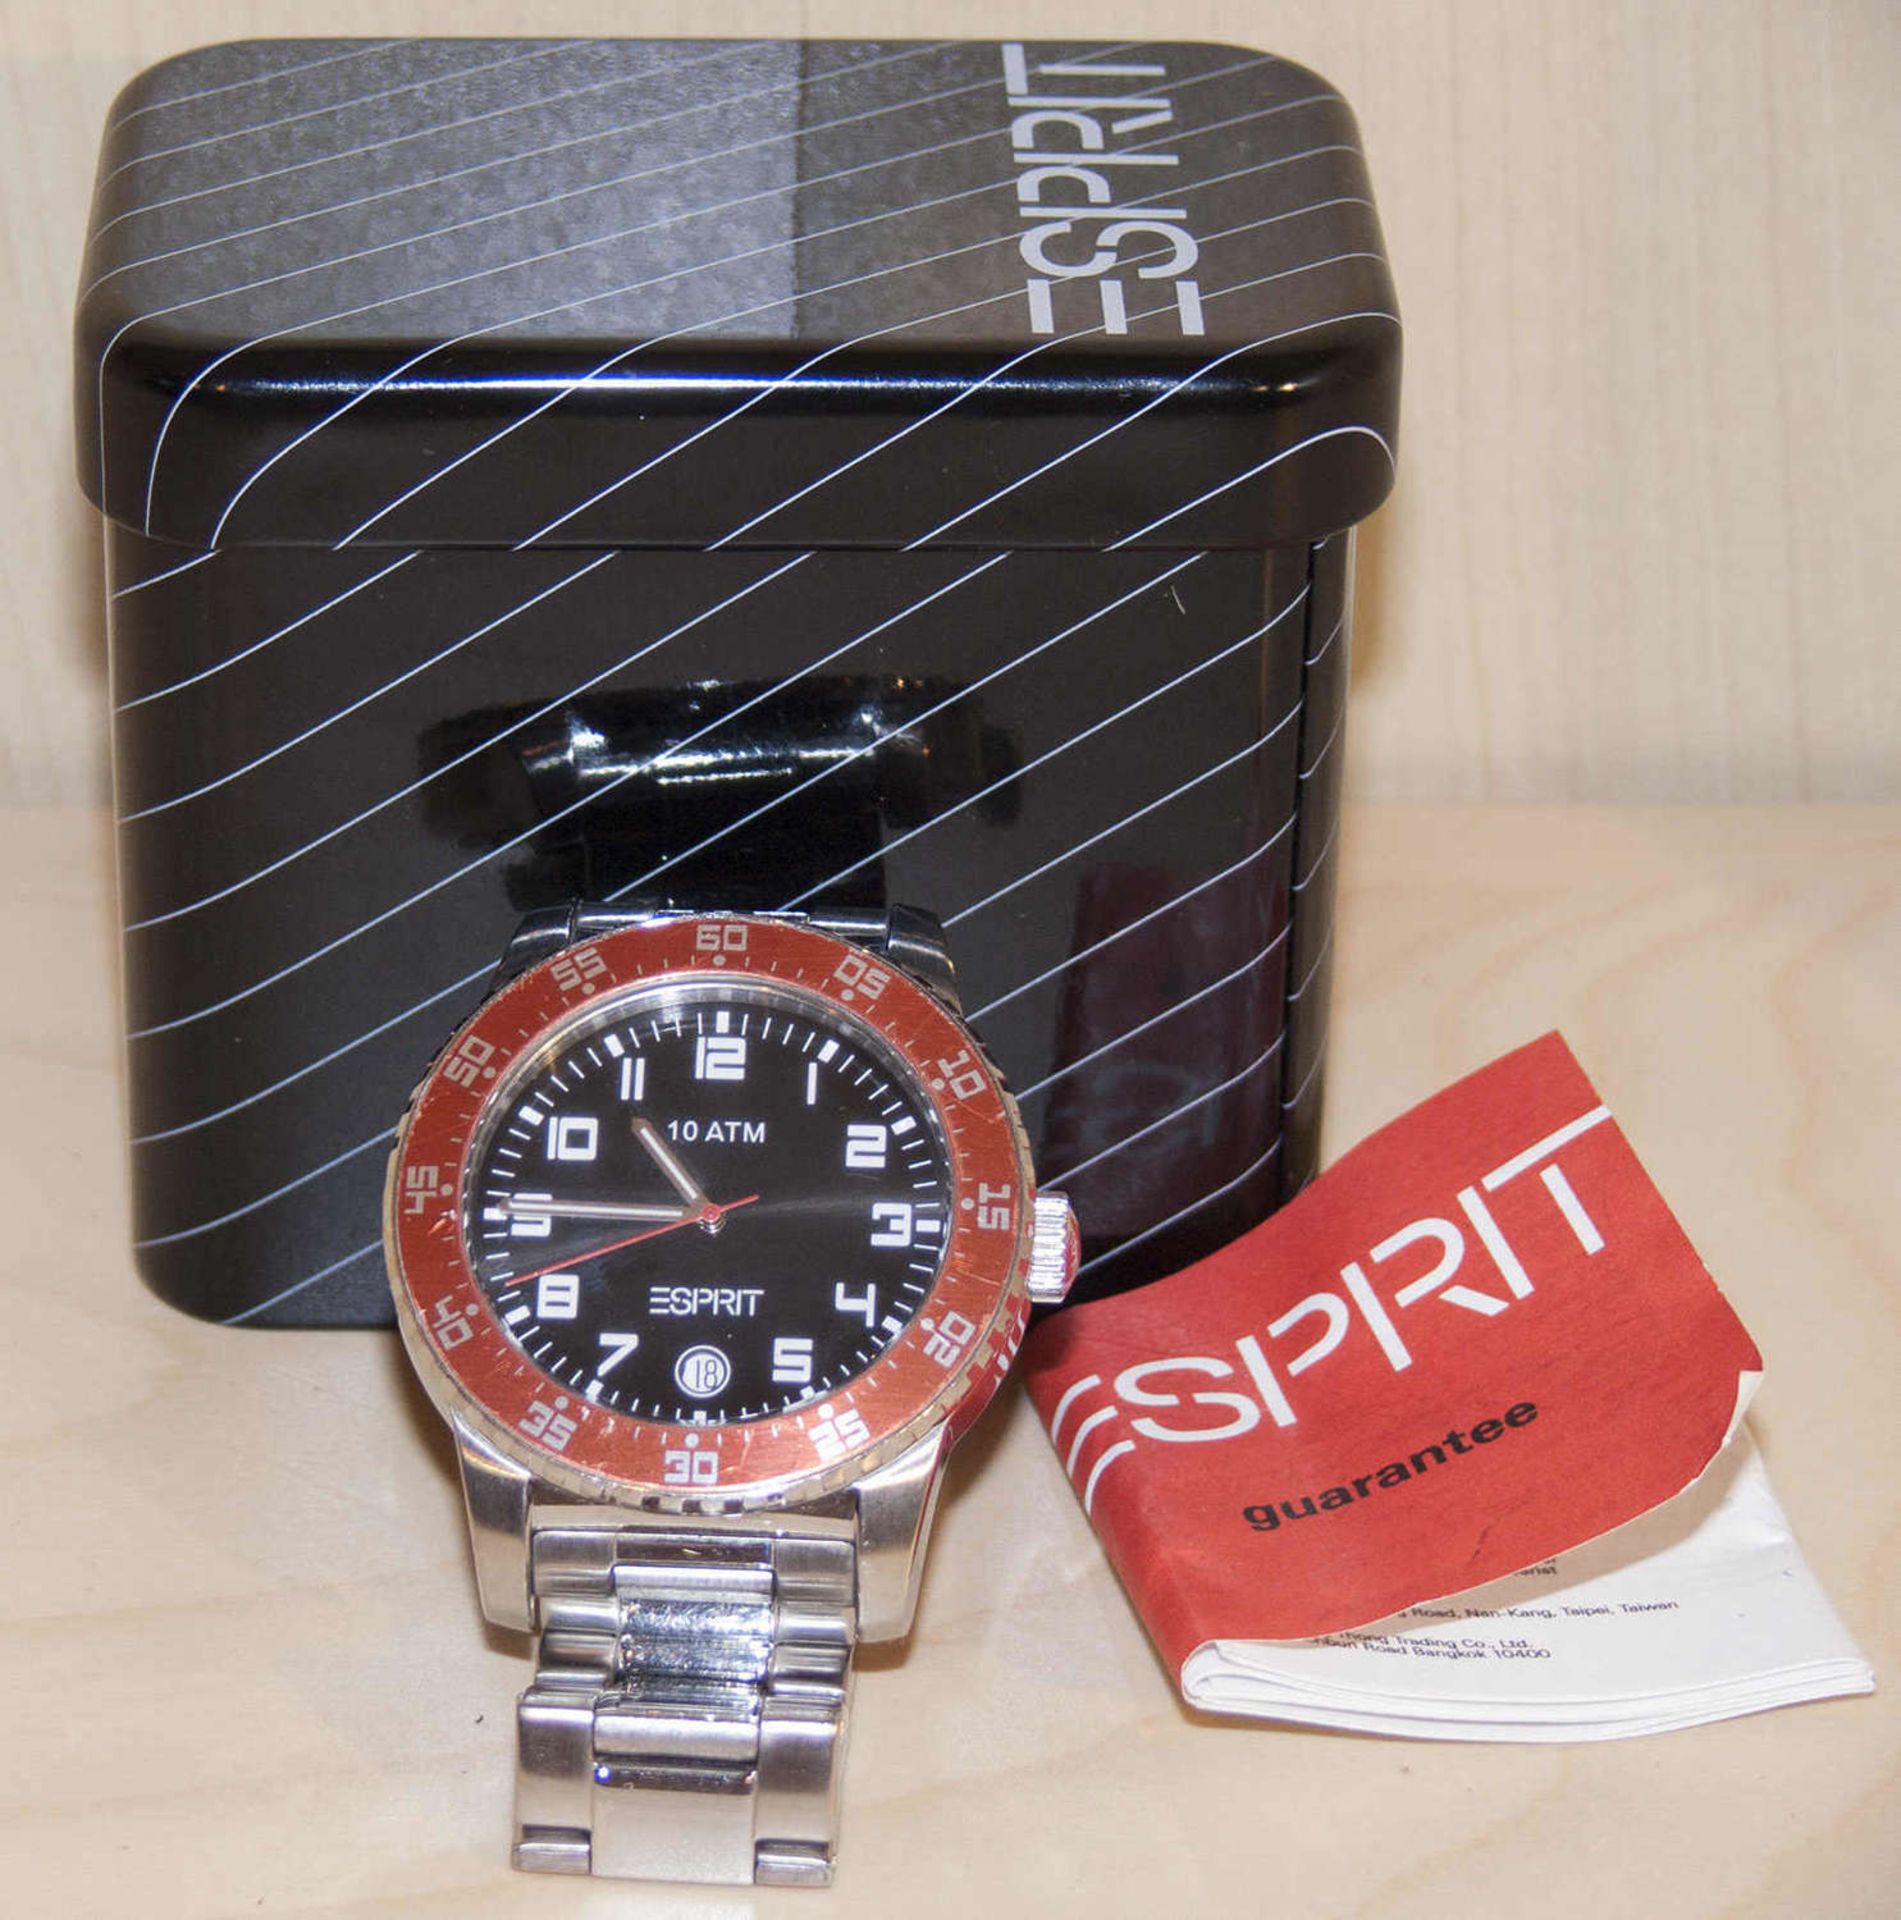 Esprit Herren - Armbanduhr. Datumsanzeige auf "6". Metall - Armband, mit roter Lünette.